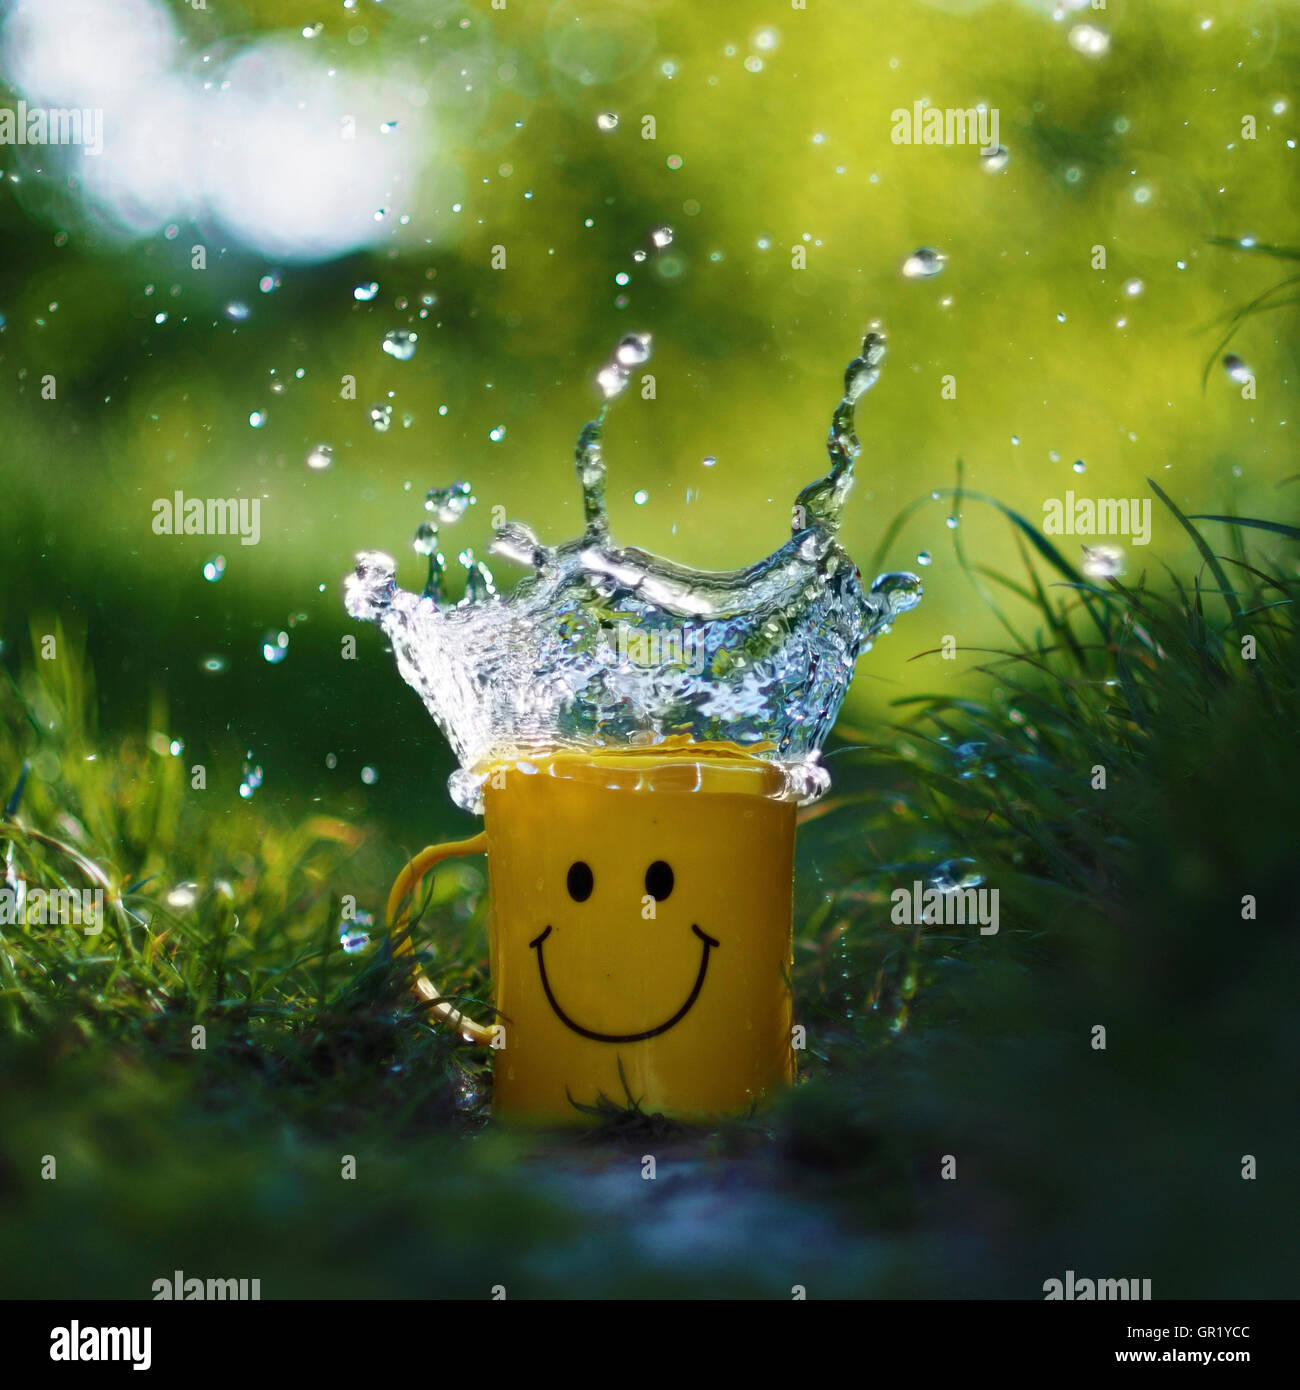 Touche de l'eau dans une tasse en plastique avec un smiley sur elle. Banque D'Images